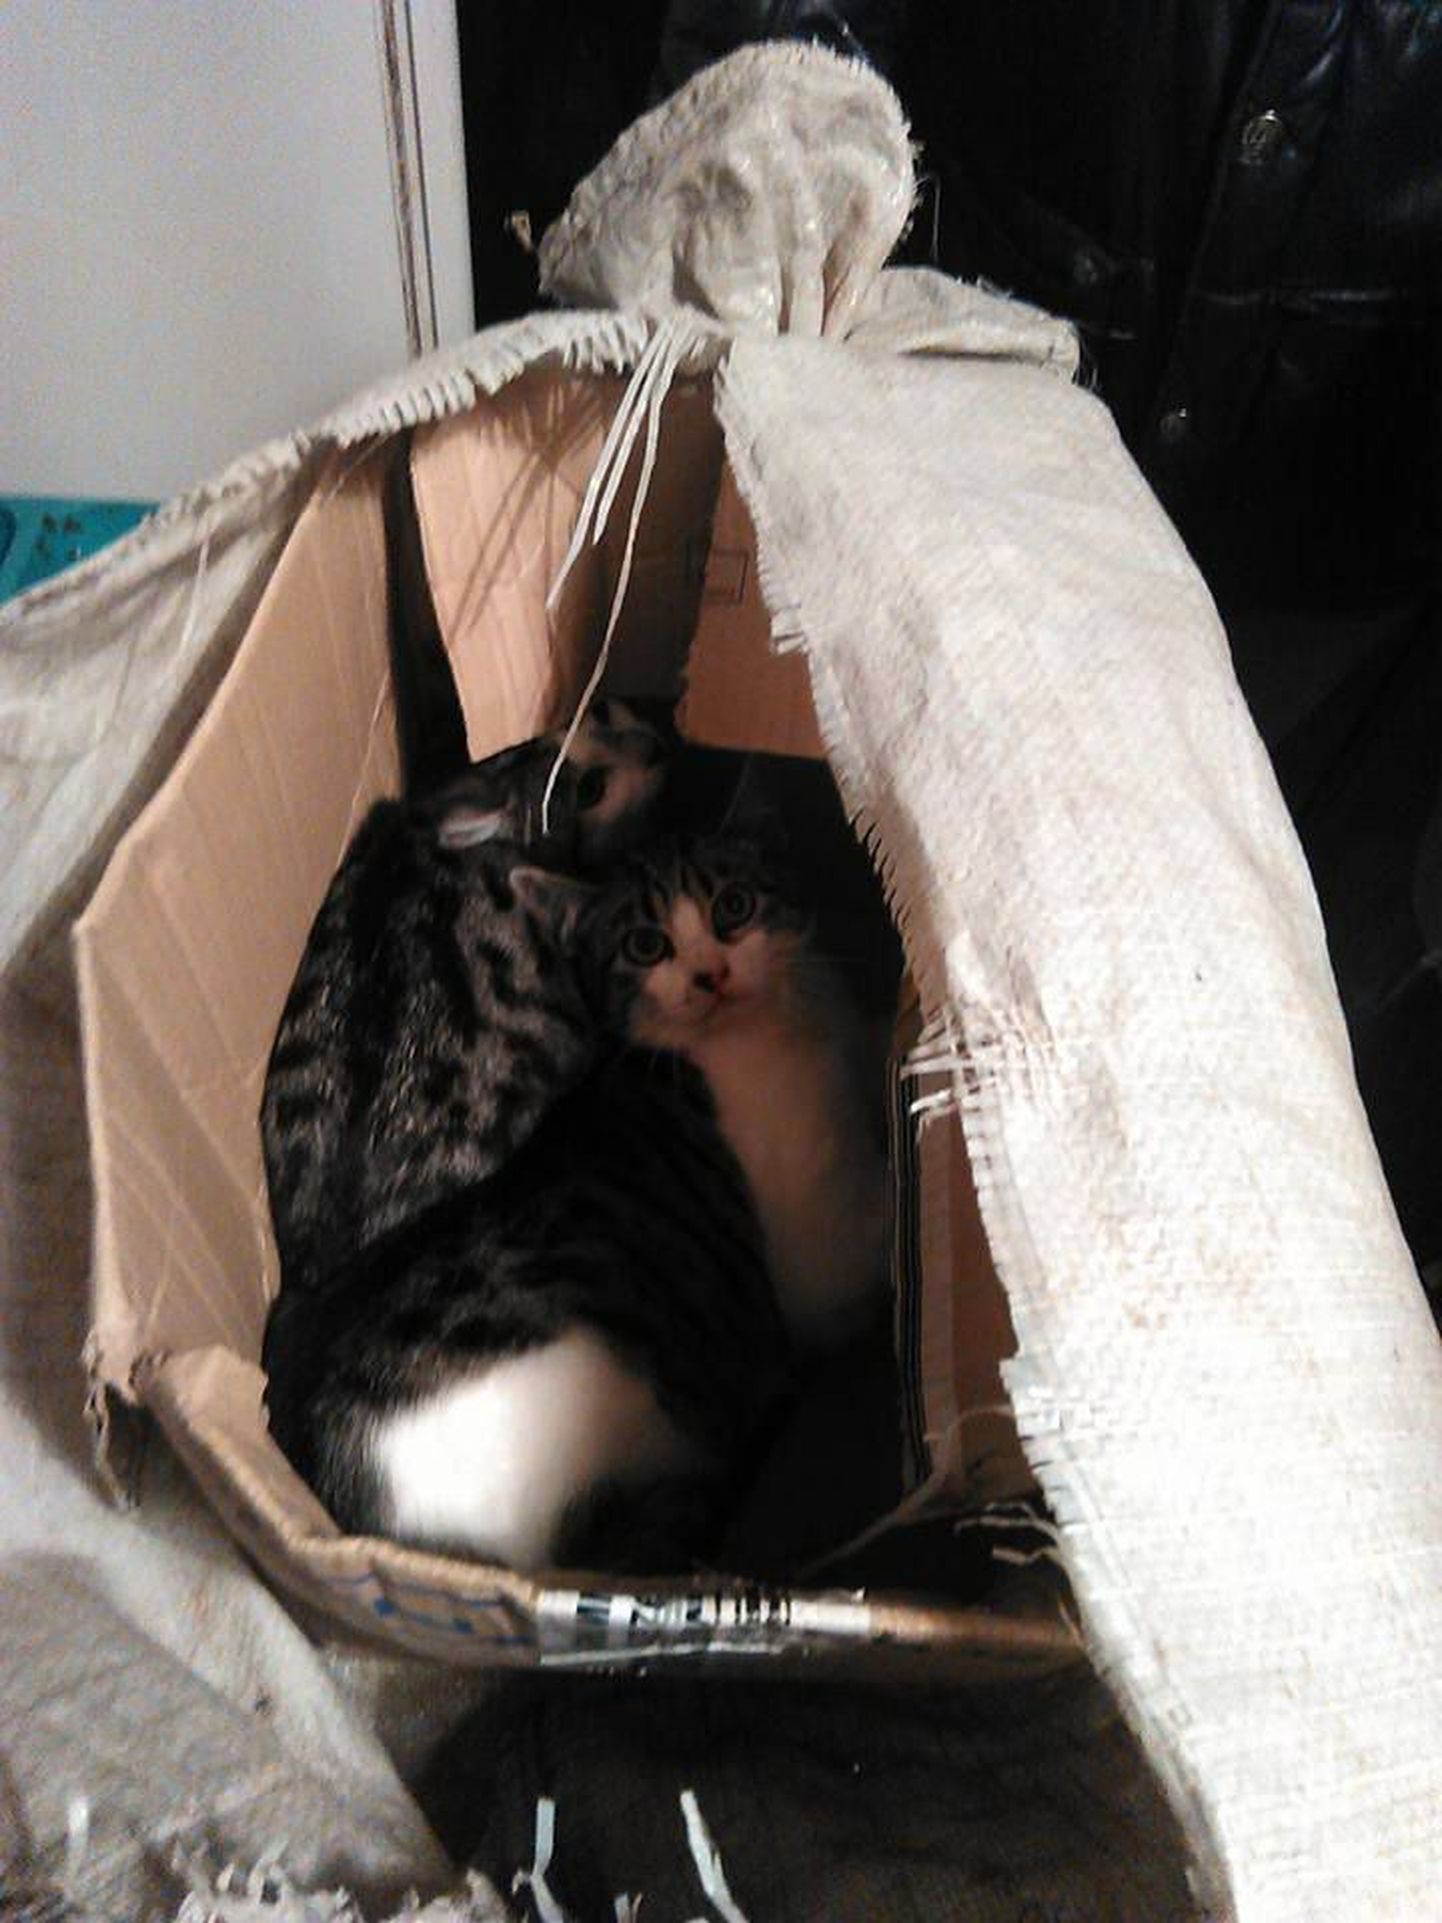 Kinniteibitud pappkarpi ja seejärel kilekotti pakitud kassidel oli õnne, et neid leiti enne lämbumist